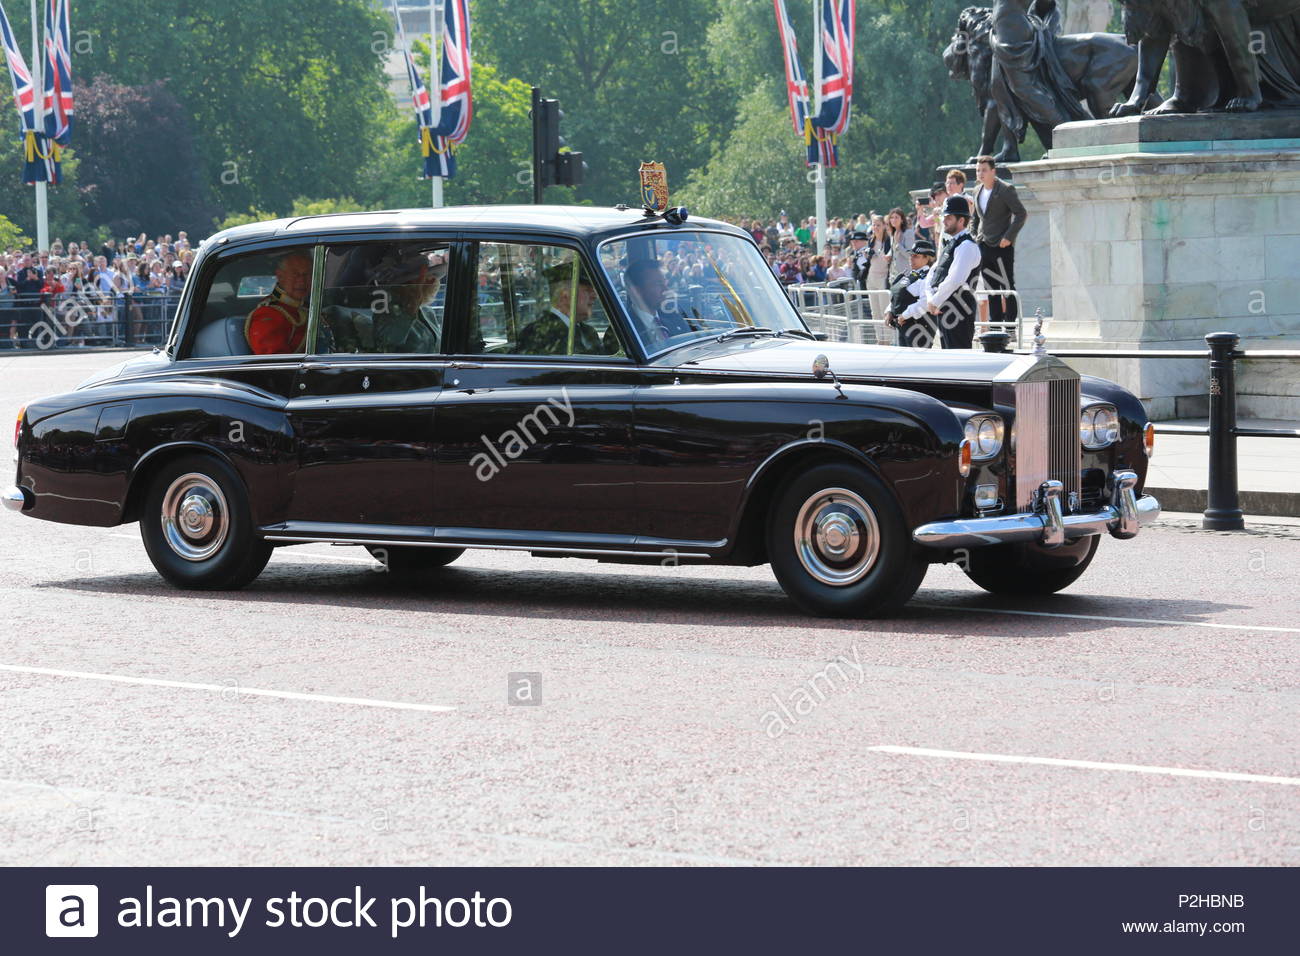 Die jährliche die Farbe in London zu Ehren von Königin Elizabeth's Geburtstag übernommen hat. Tausende säumten die Straßen ihrer Majestät begrüßen zu dürfen. Stockfoto